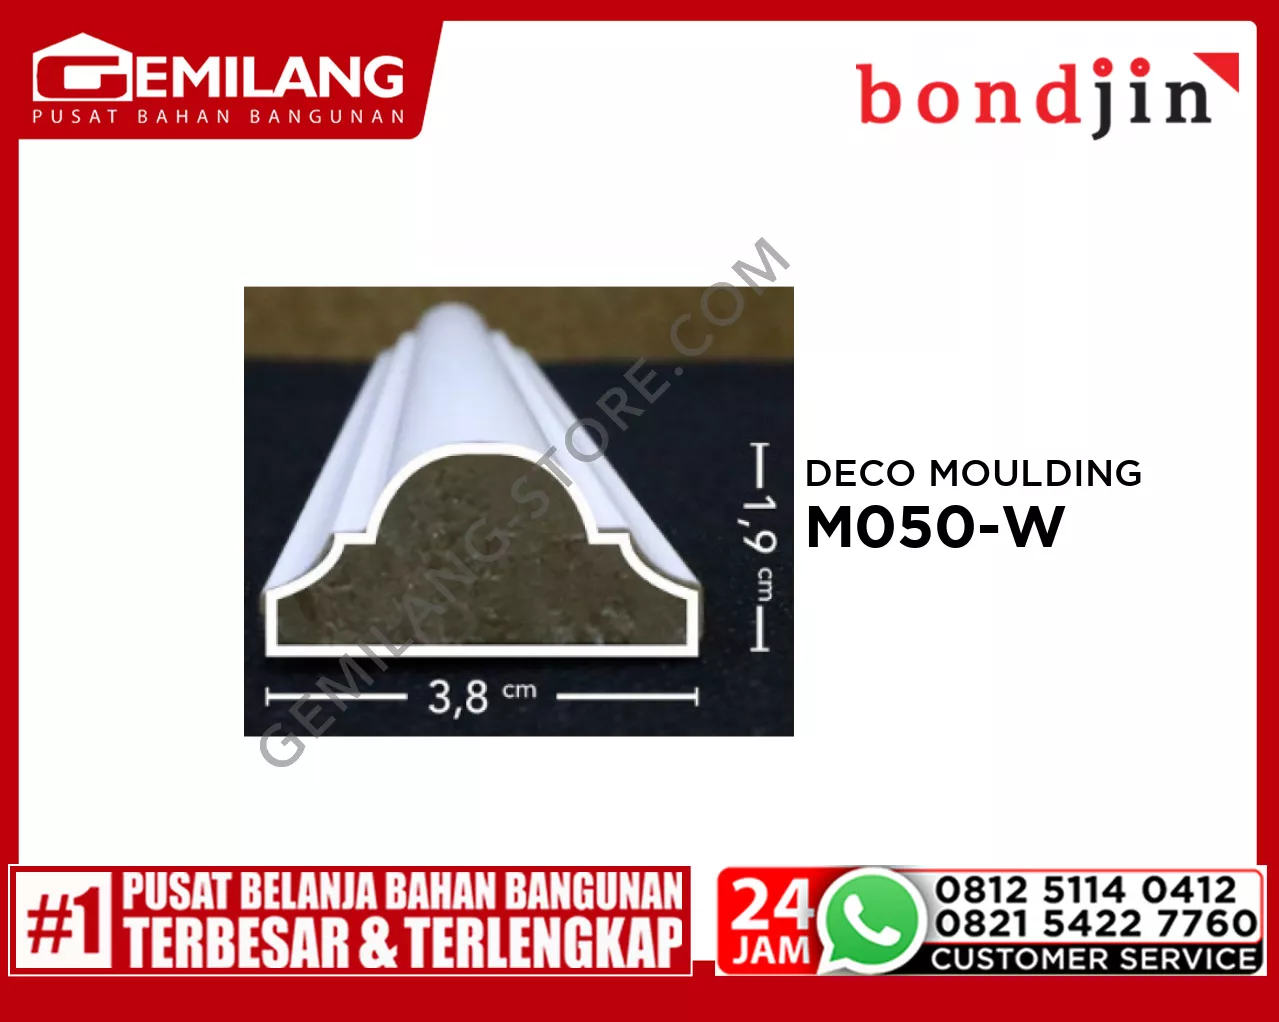 BONDJIN DECO MOULDING M050-W (38 x 2400 x 19T)